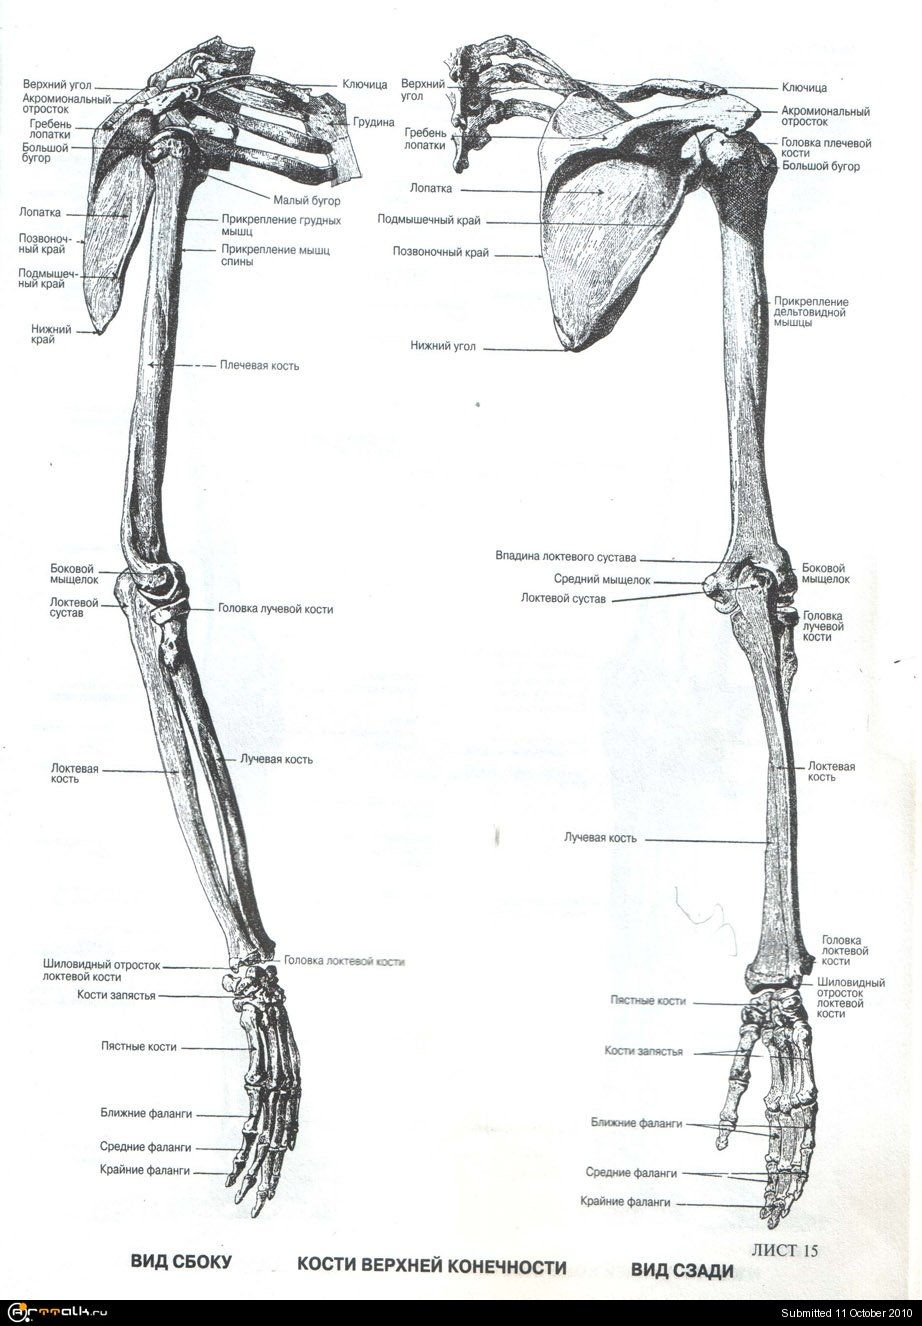 Самая крупная кость поясов конечностей. Кости плечевого пояса анатомия и Верхние конечности. Кости верхней конечности анатомия. Верхние конечности человека.